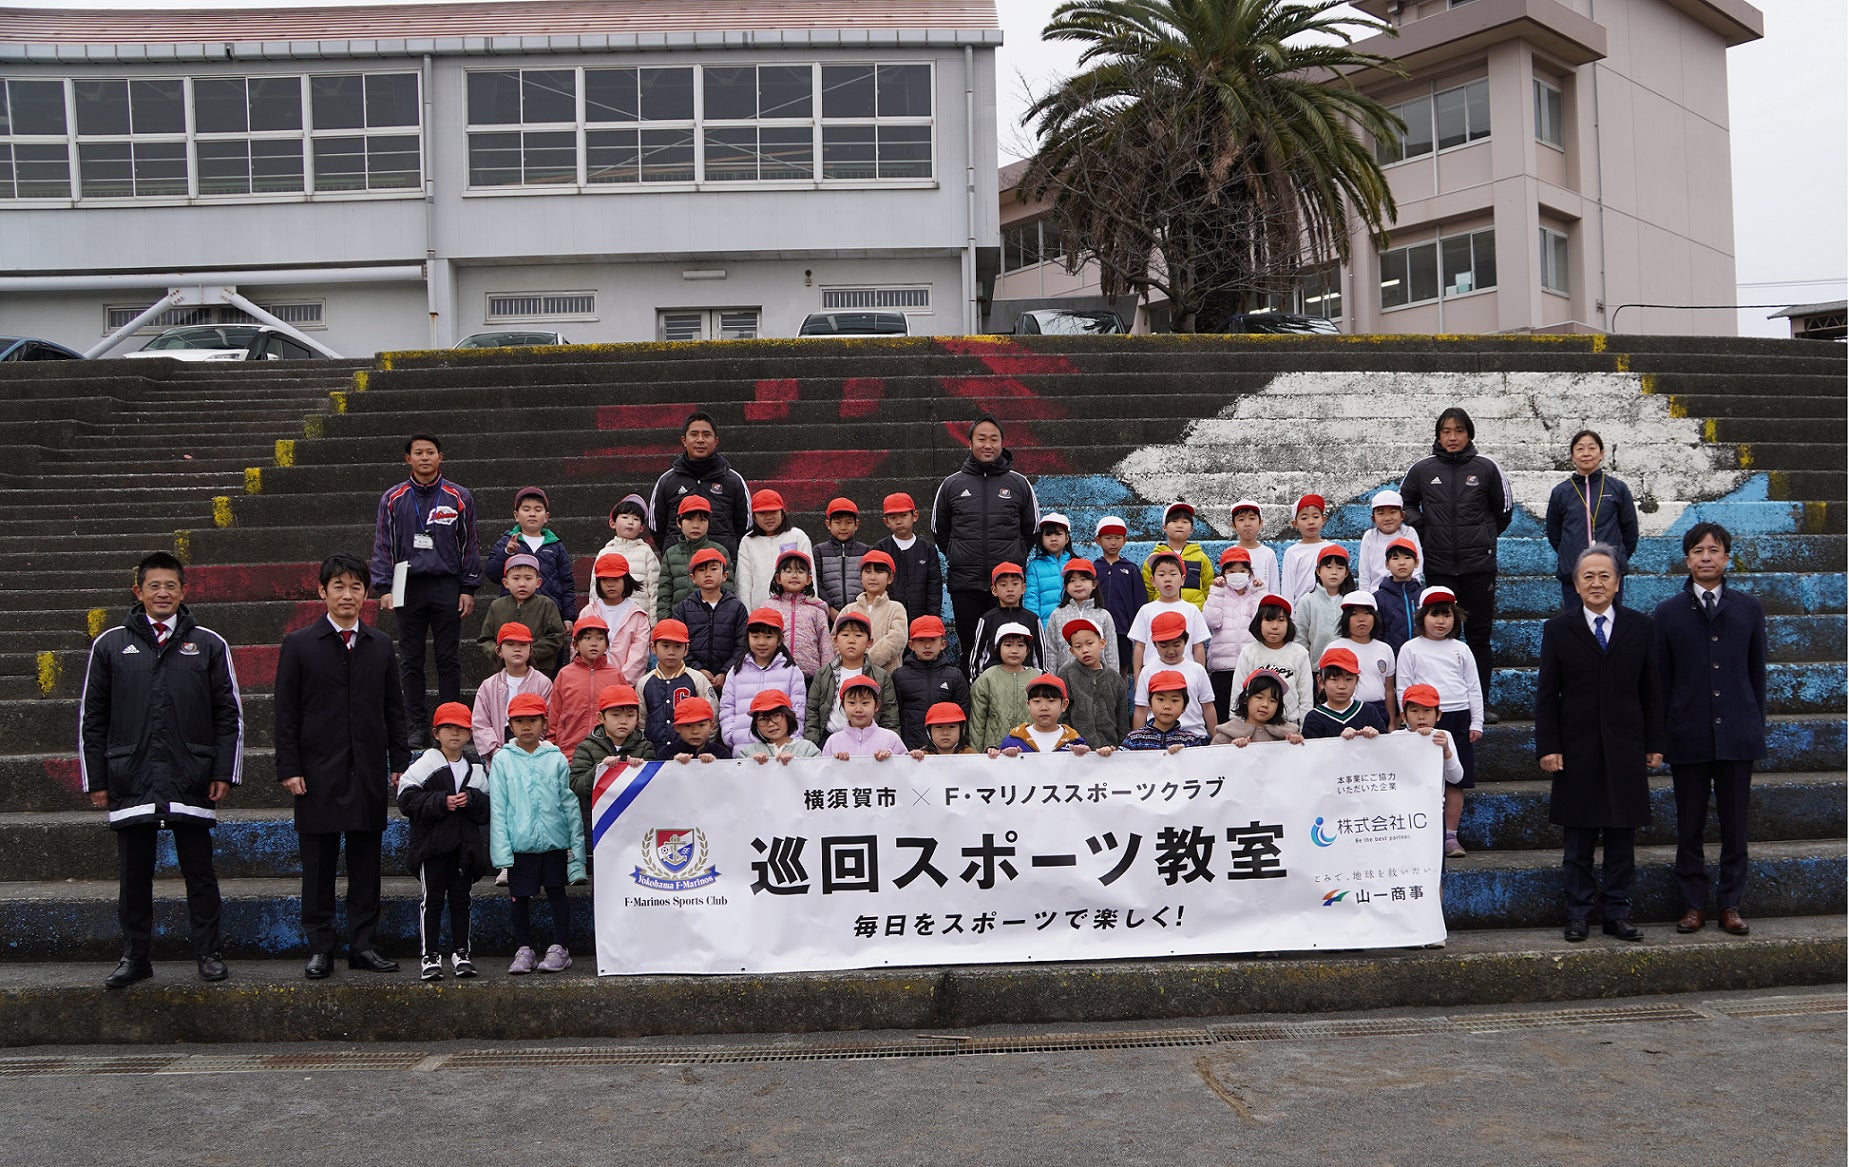 【株式会社ＩＣ】F・マリノススポーツクラブと横須賀市が取り組むスポーツ振興施策に賛同。横須賀市立富士見小学校にて「スポーツ用品贈呈式」を行いました。